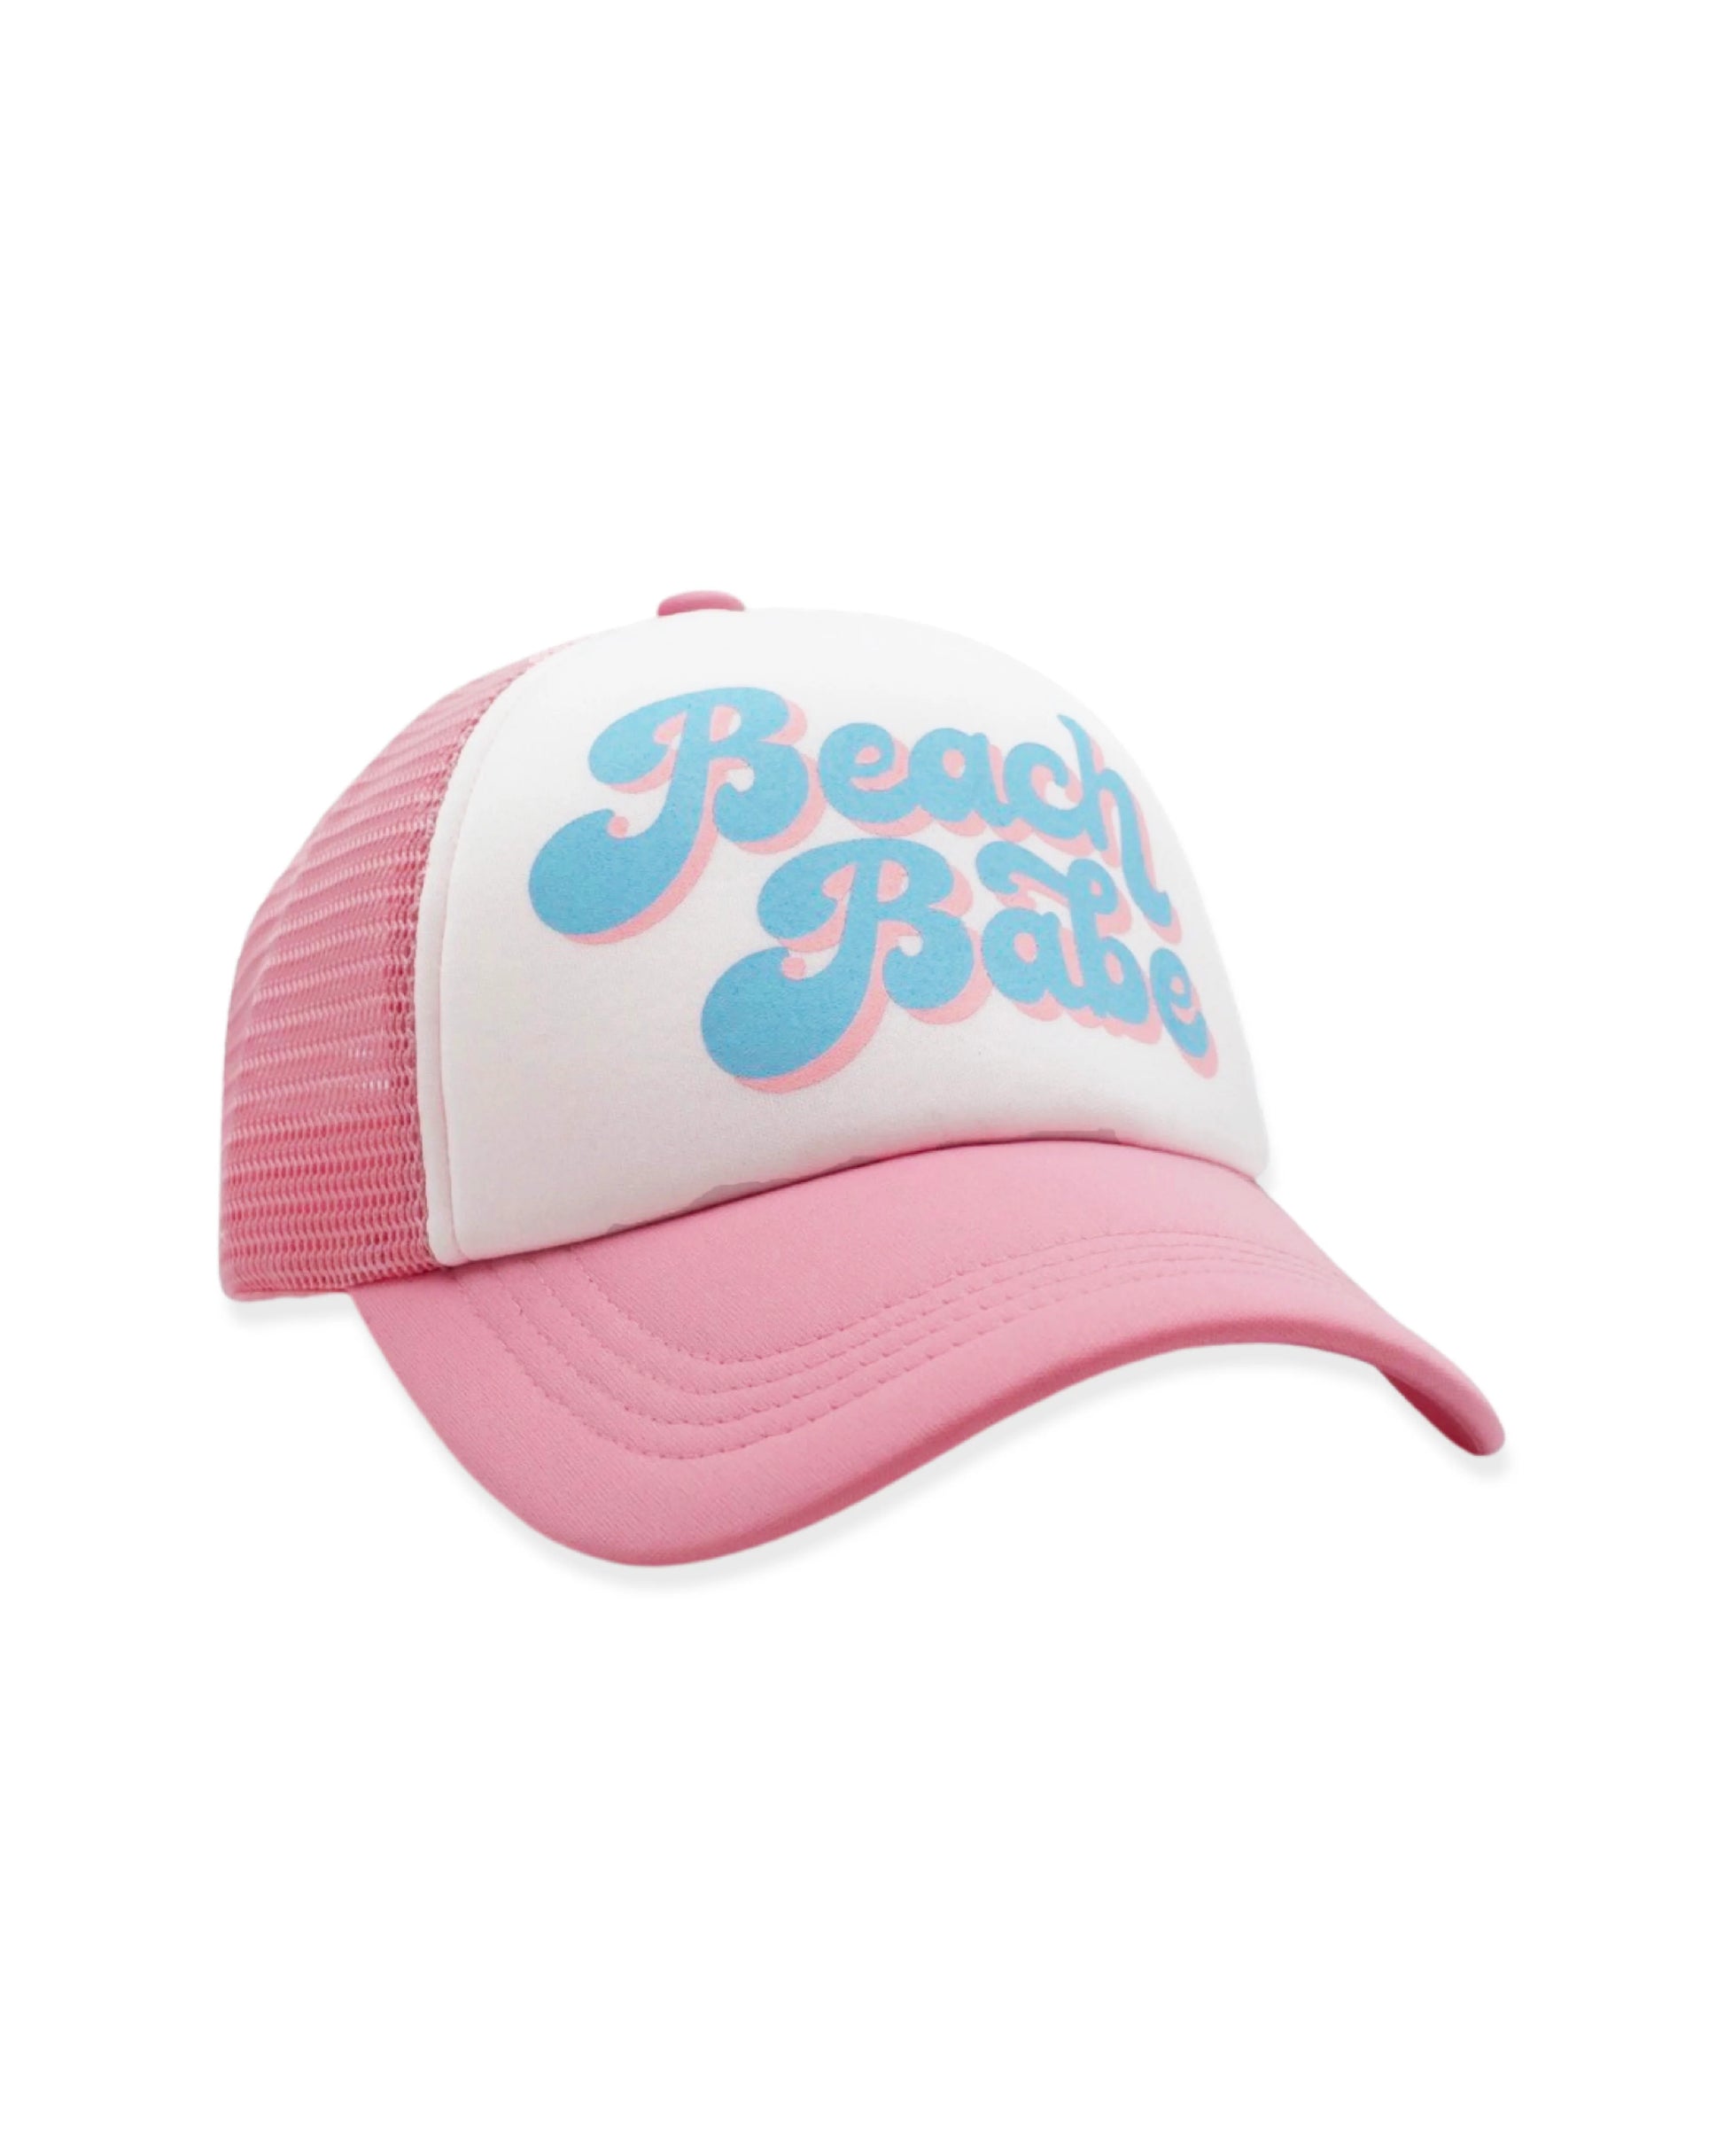 Beach Babe Trucker Hat  - Doodlebug's Children's Boutique